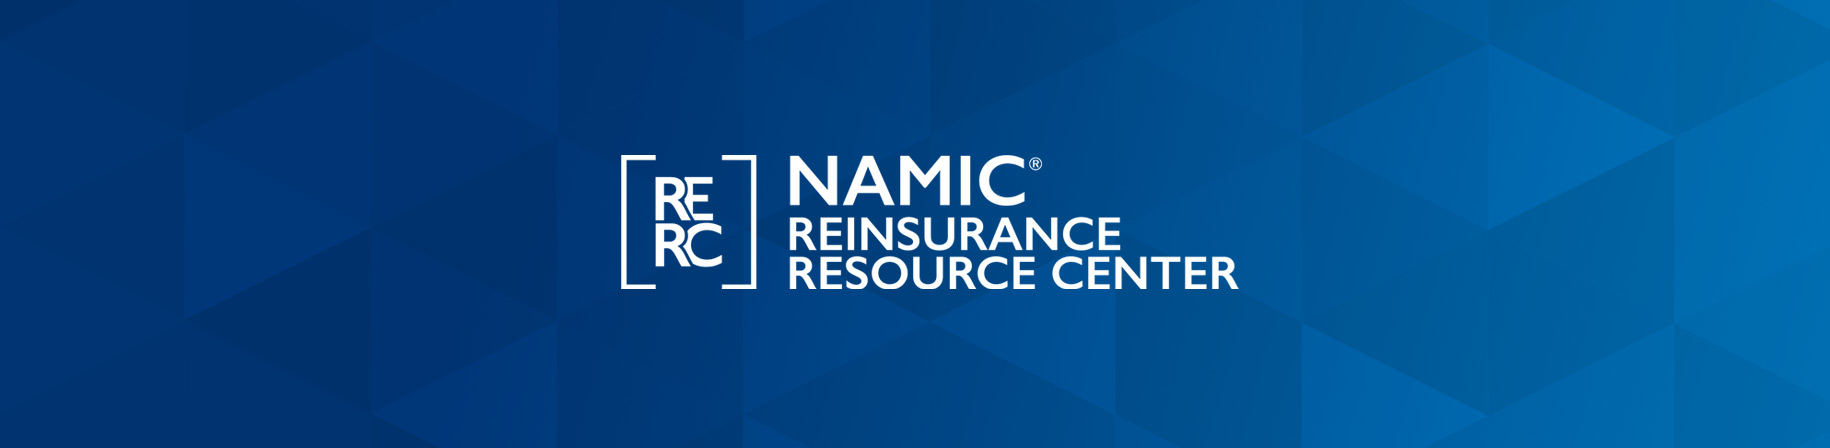 Reinsurance Resource Center